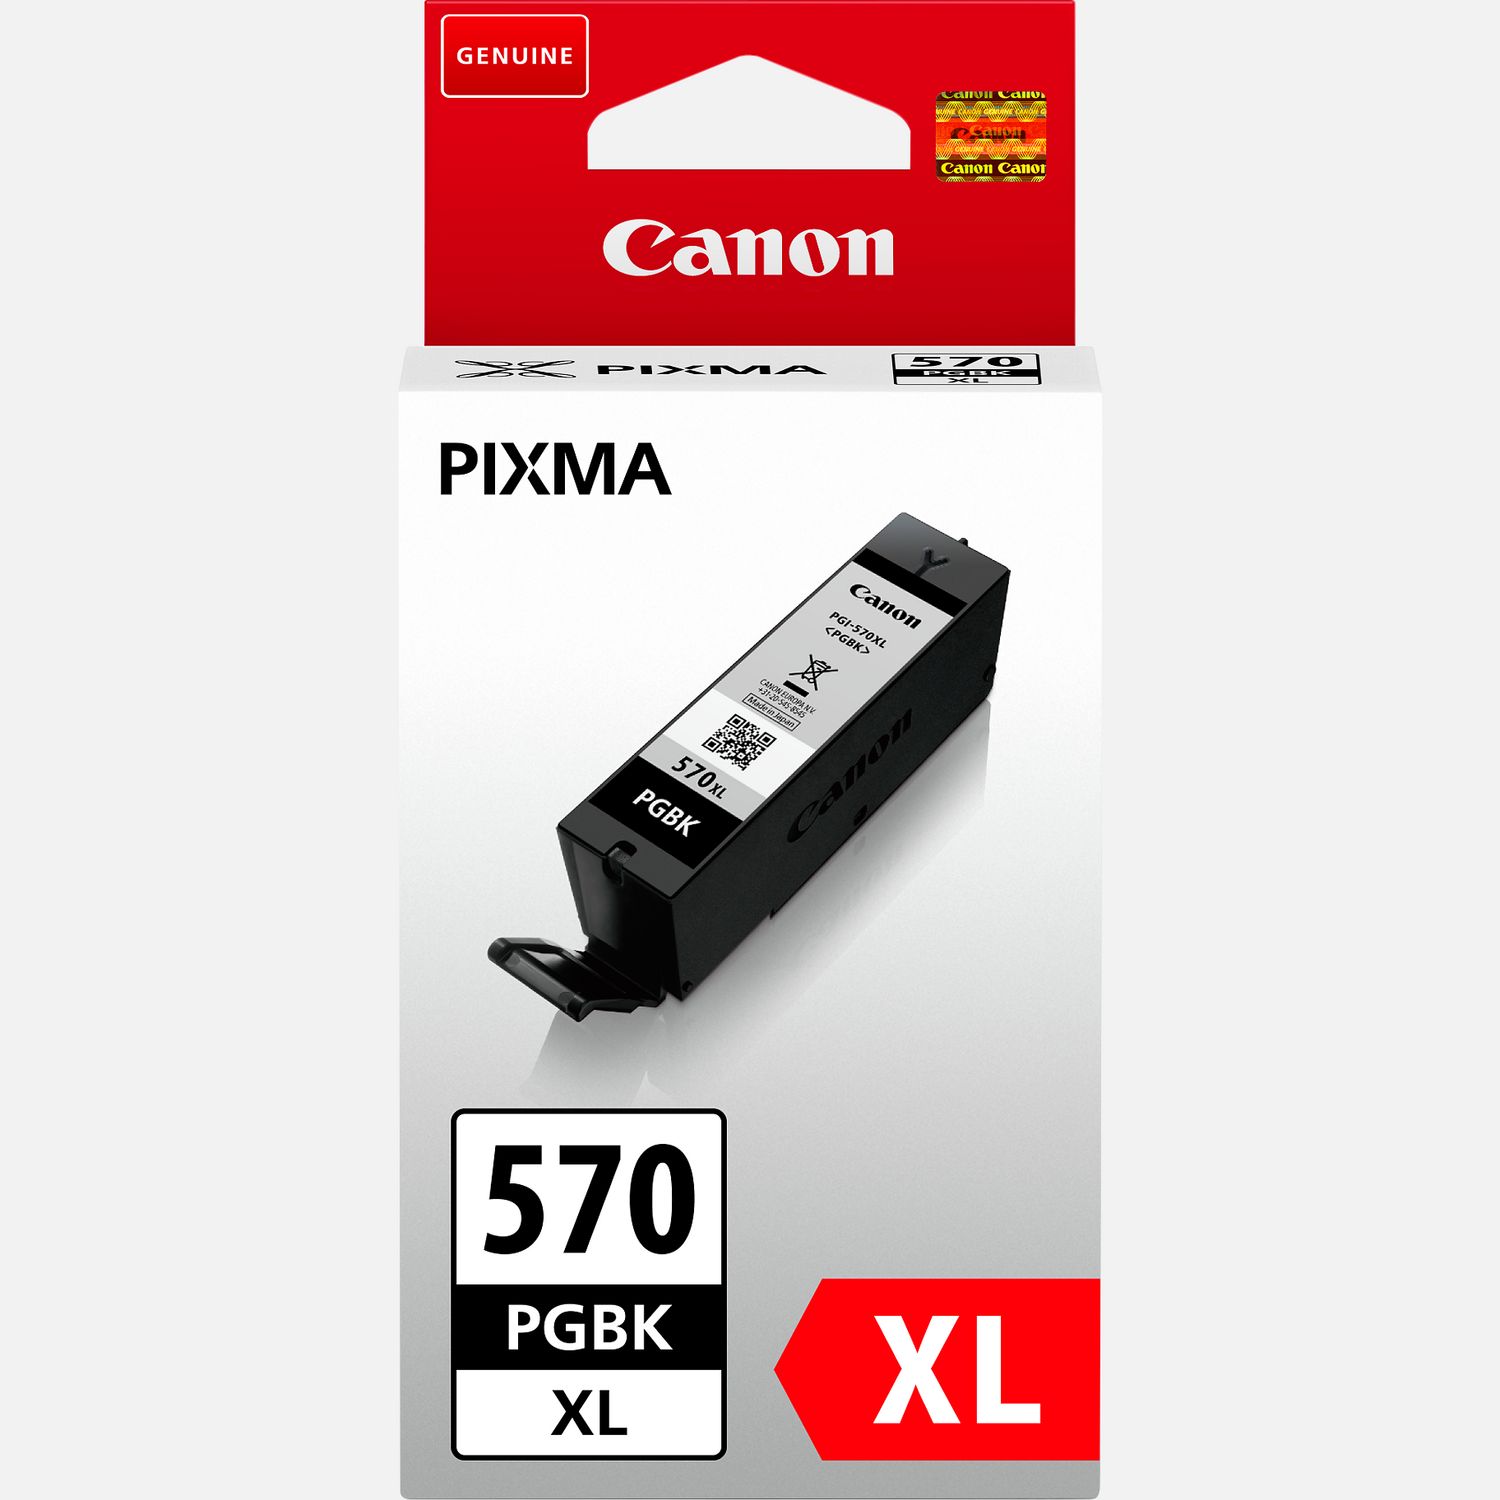 1 Cartouche d'encre noire pour remplacer Canon IGI-570Bk